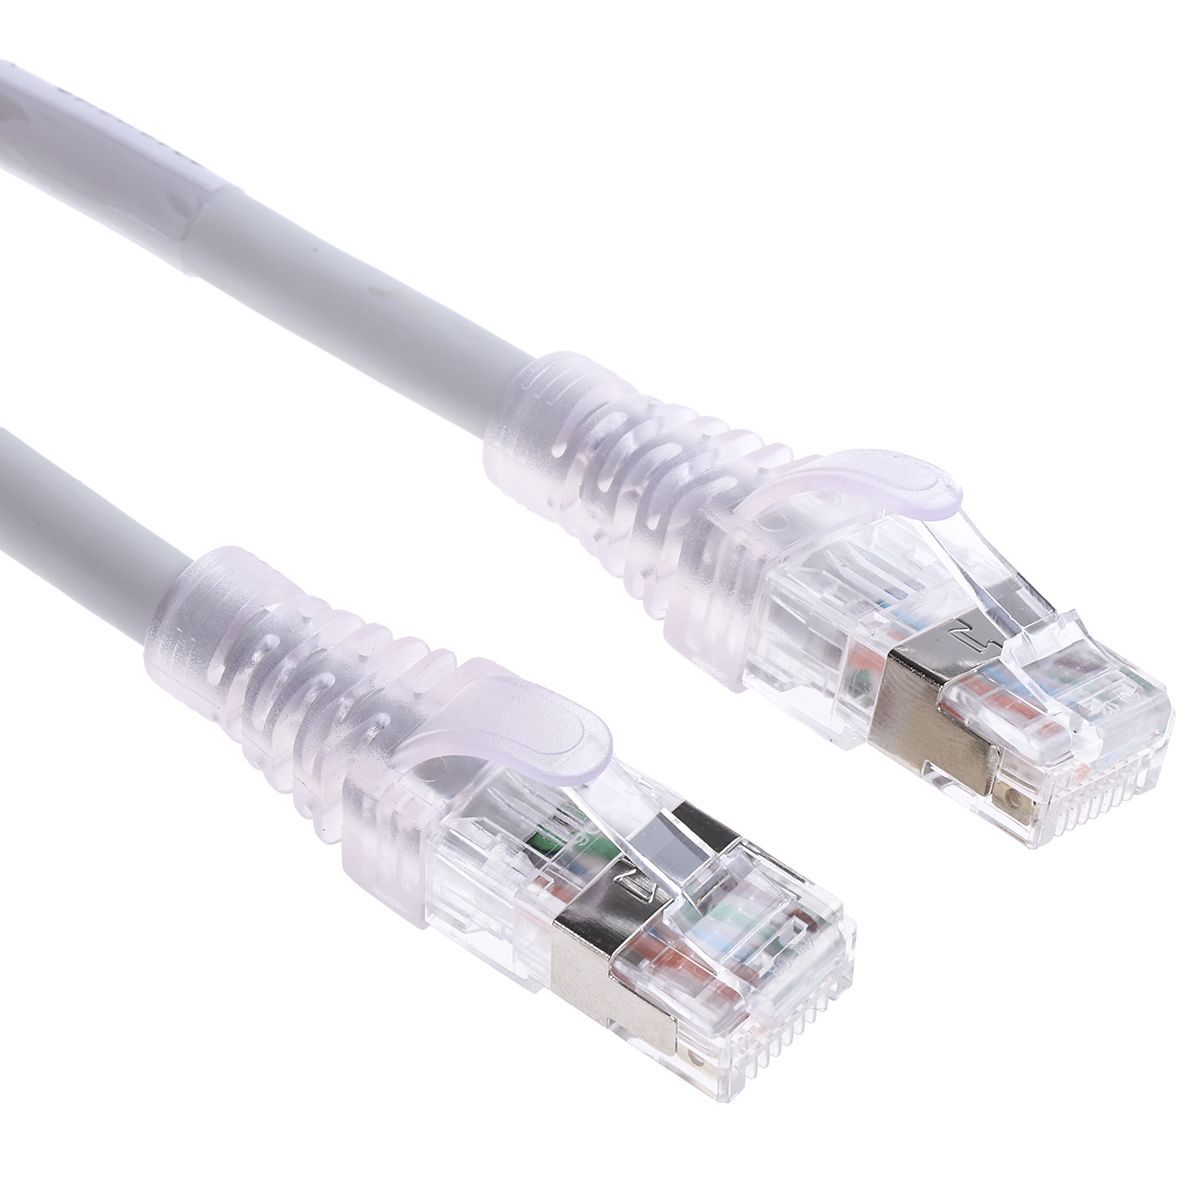 Molex Ethernetkabel Cat.6a, 10m, Grau Patchkabel, A RJ45 STP Male, B RJ45, LSZH